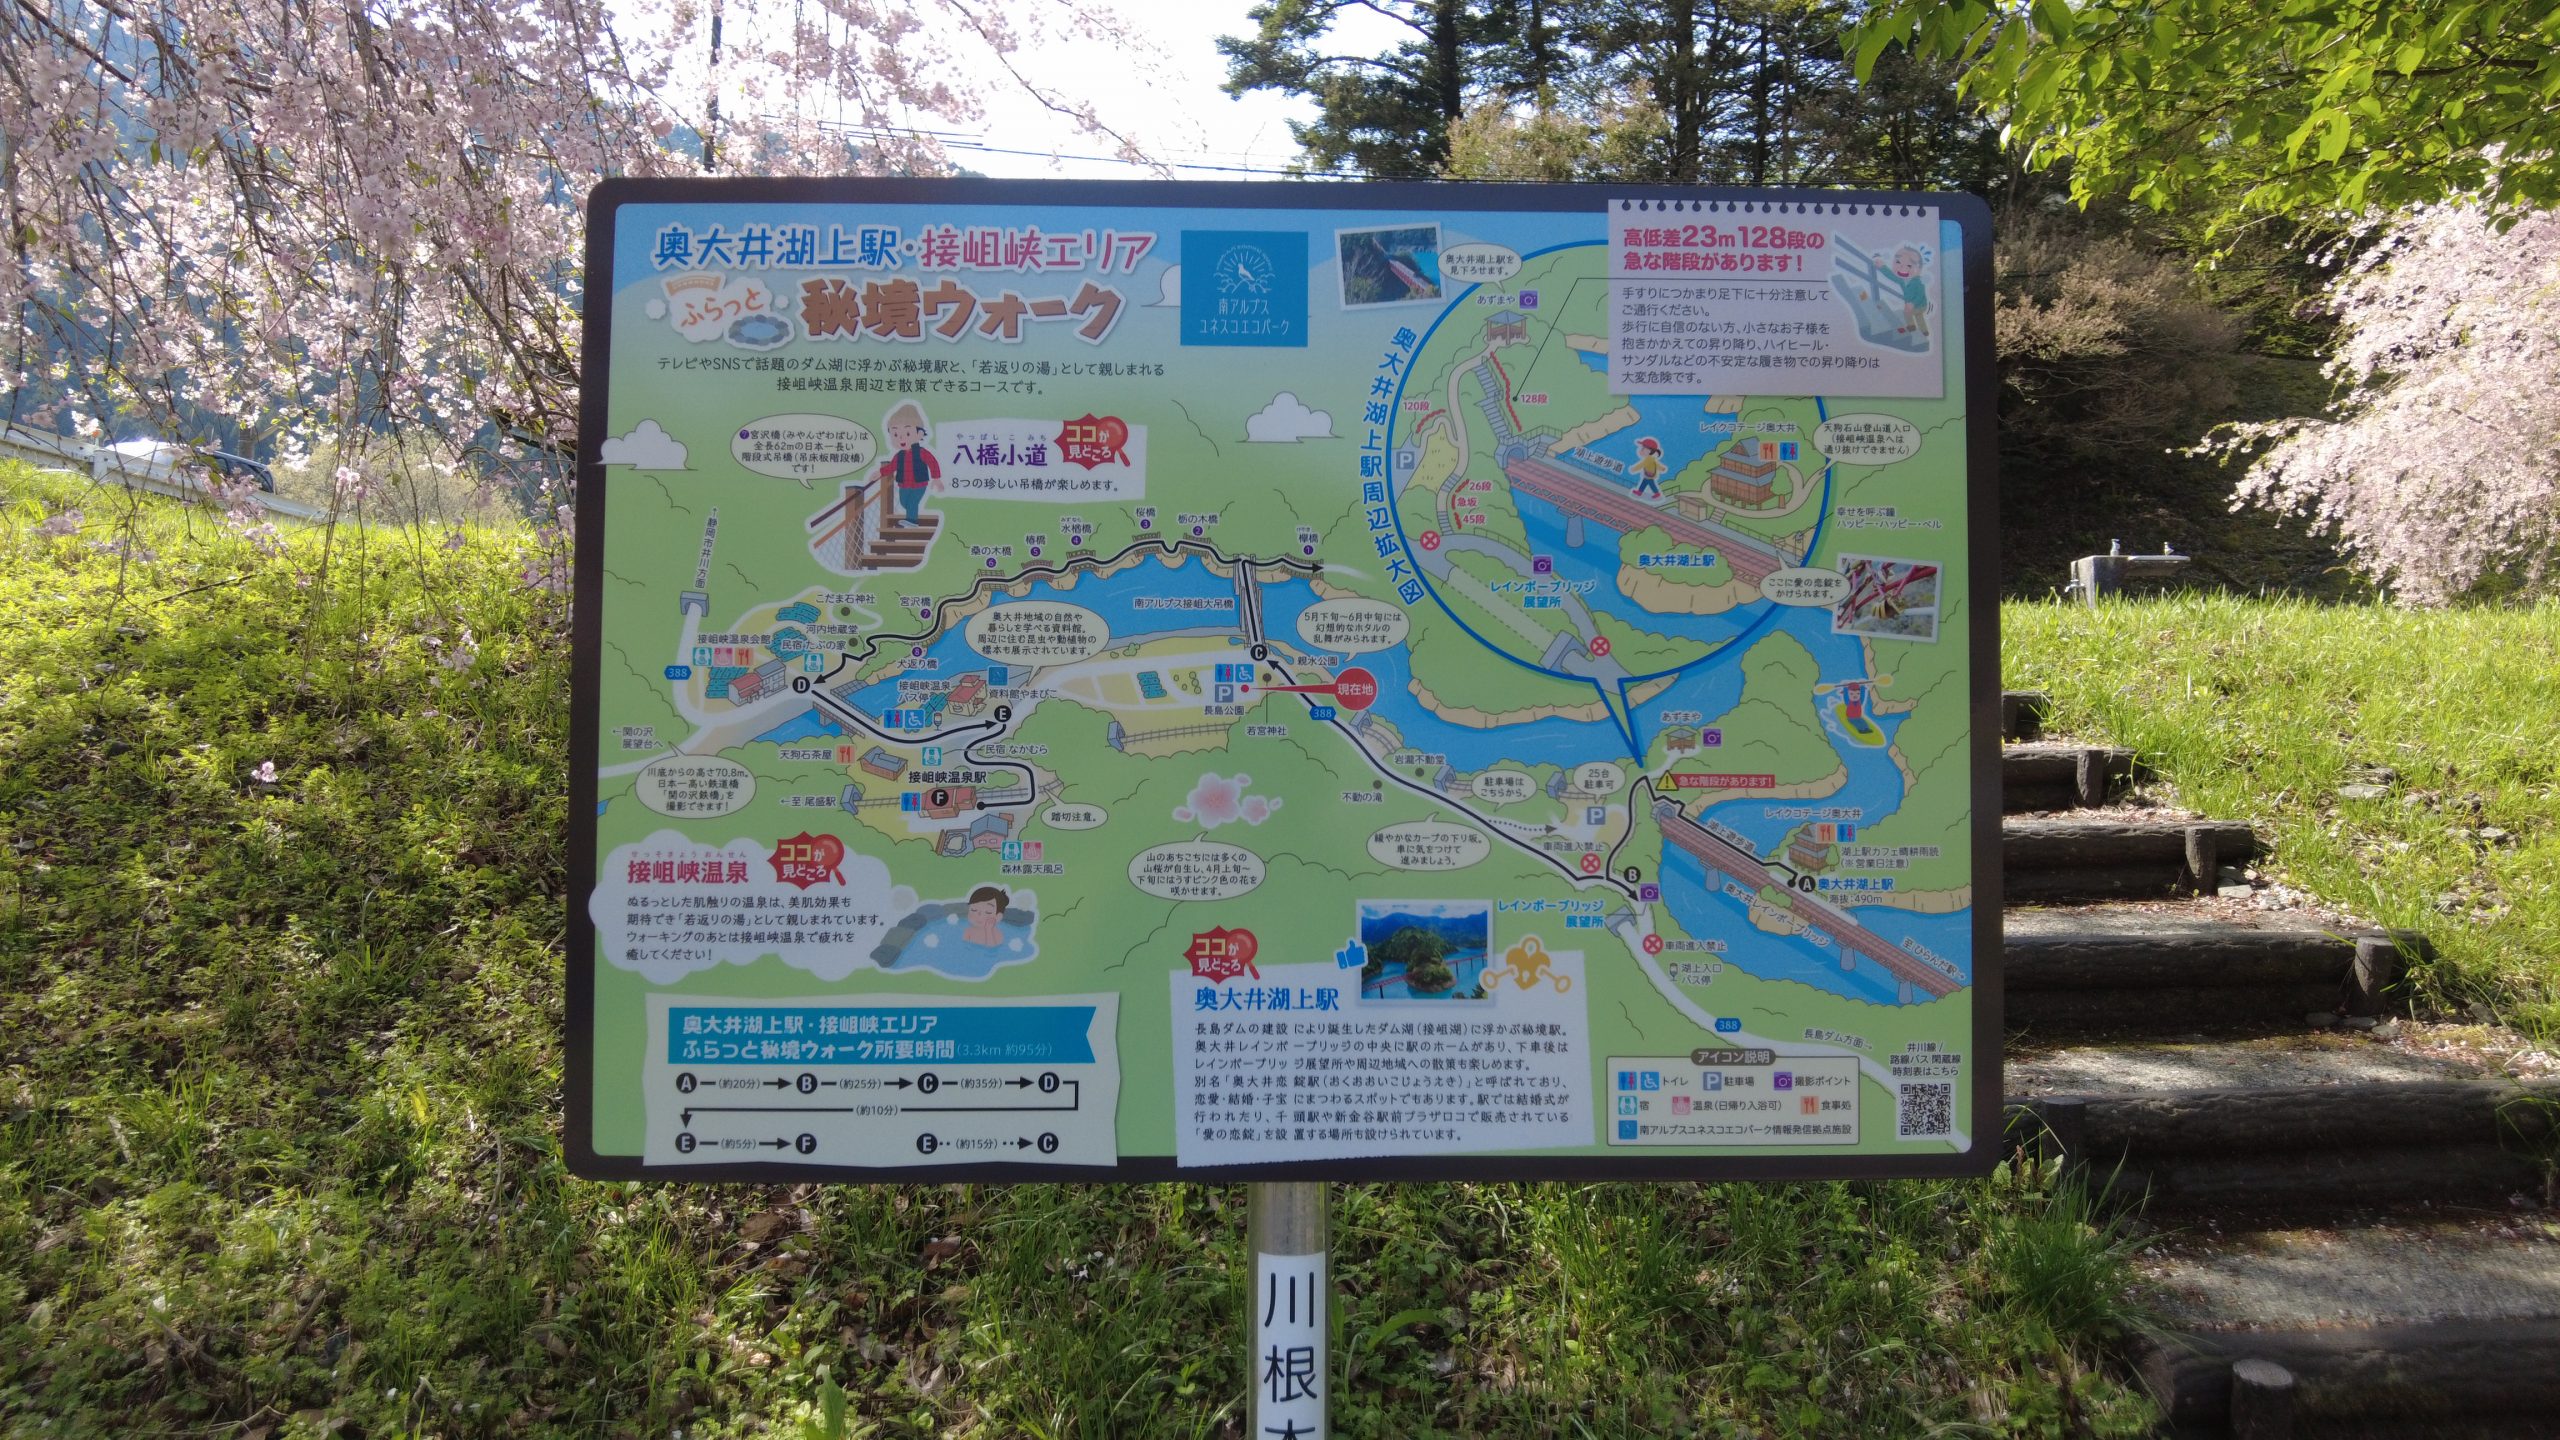 長島公園の駐車場に奥大井湖上駅・接阻峡エリアのマップが設置されていました。